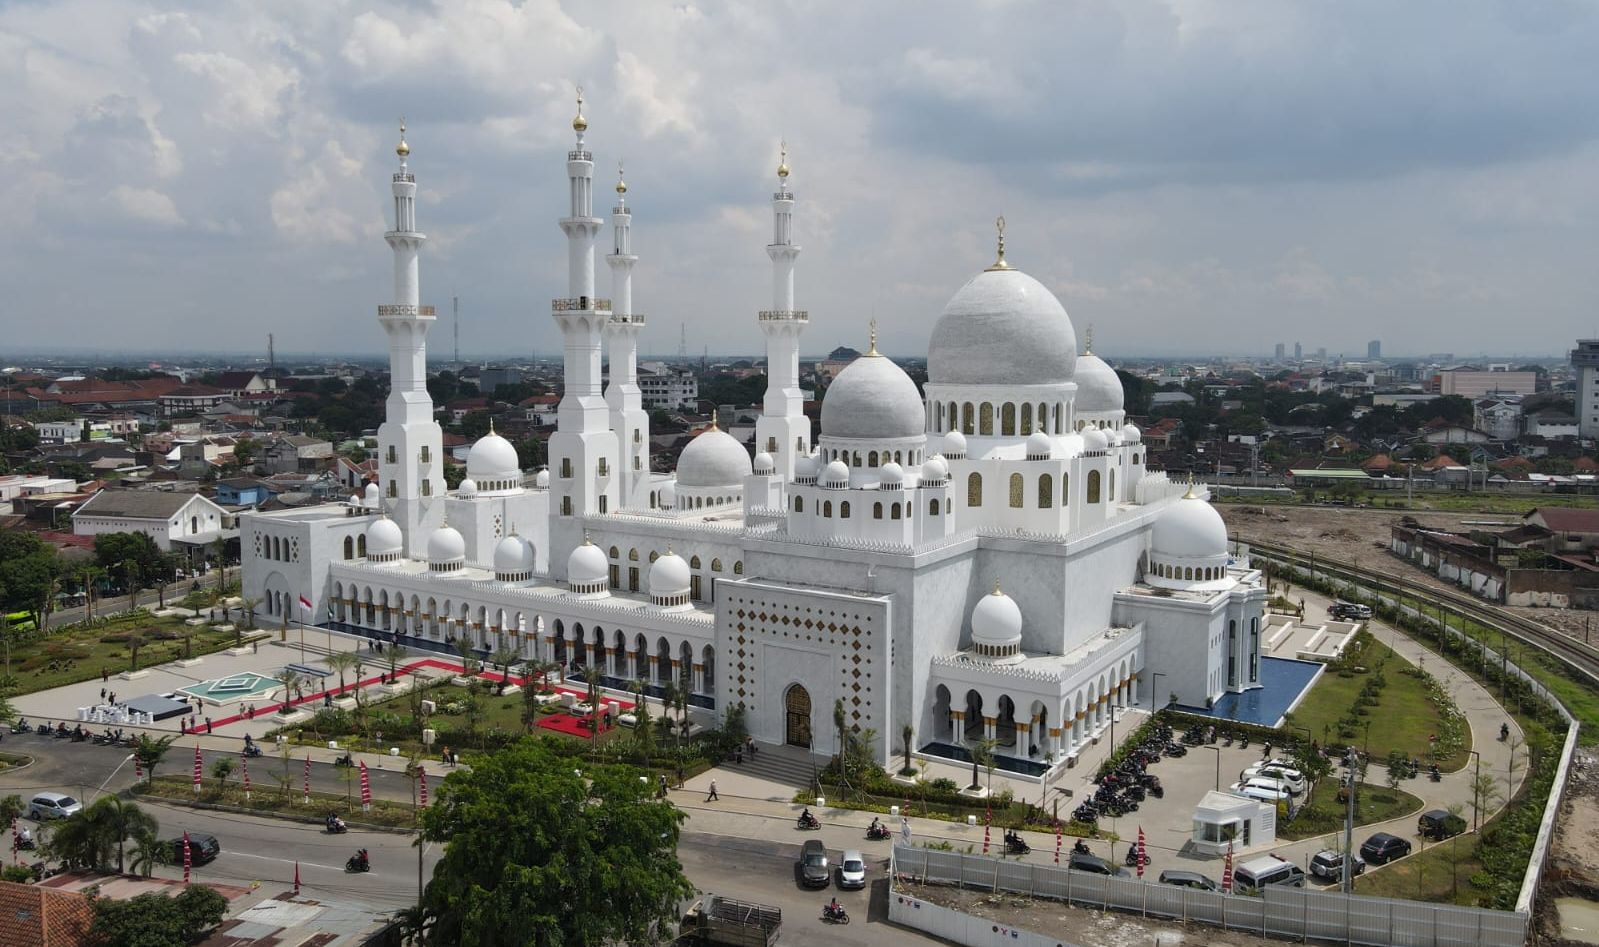 Masjid Syeikh Zayed di Kota Solo.  JAM Buka Puasa Hari Ini di Yogyakarta, Semarang, Solo, Magelang dan Jawa Tengah - DIY.